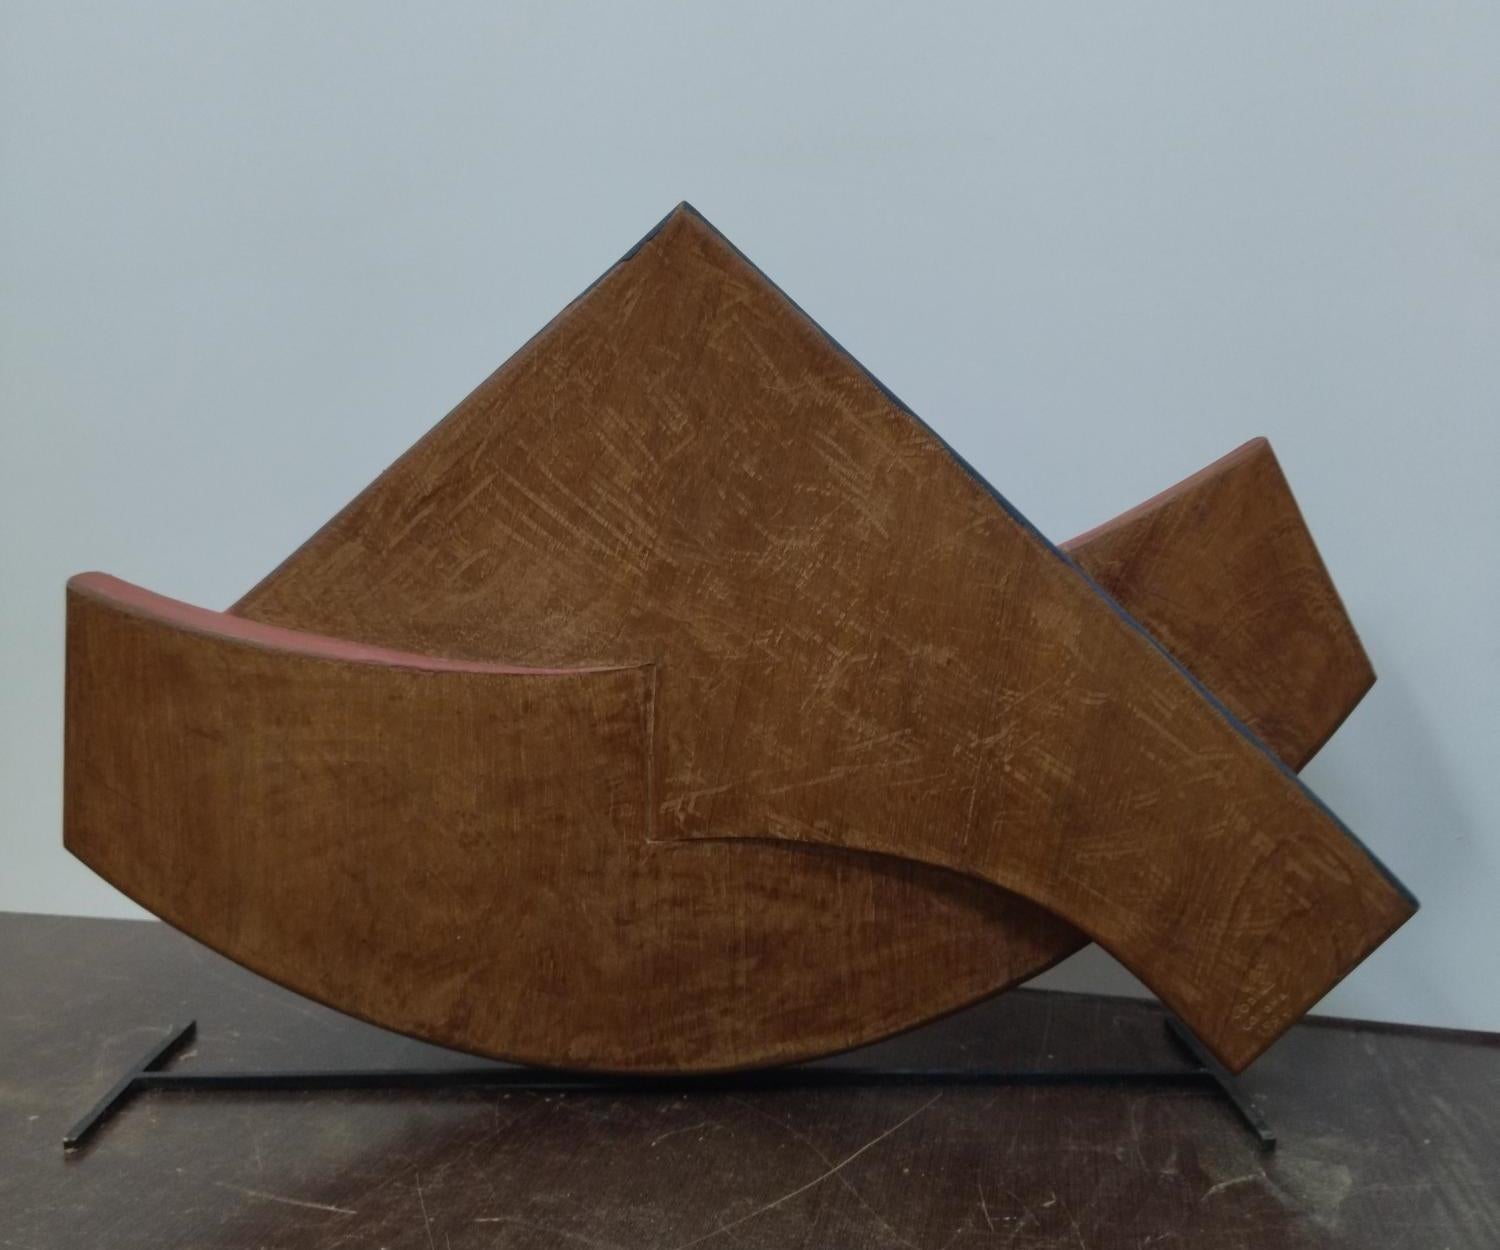  Codina Corona.  Boat   la barca  Original- wood realistic sculpture- - Sculpture by Josep Maria Codina Corona